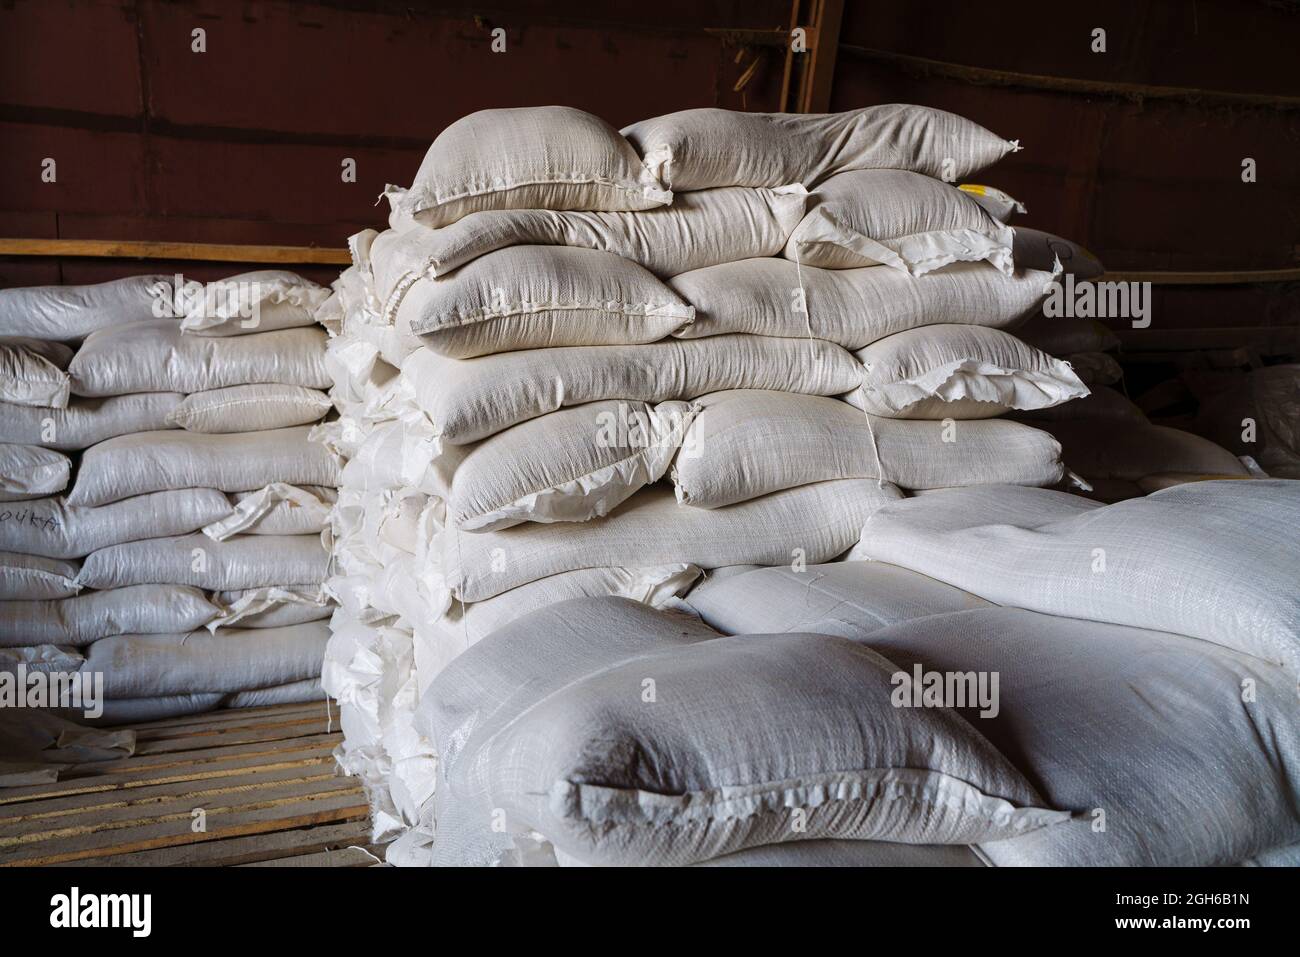 De grands sacs en tissu contenant des produits en vrac inconnus se trouvent dans l'entrepôt. Une image illustrant les produits confisqués en raison de sanctions, ou le Banque D'Images